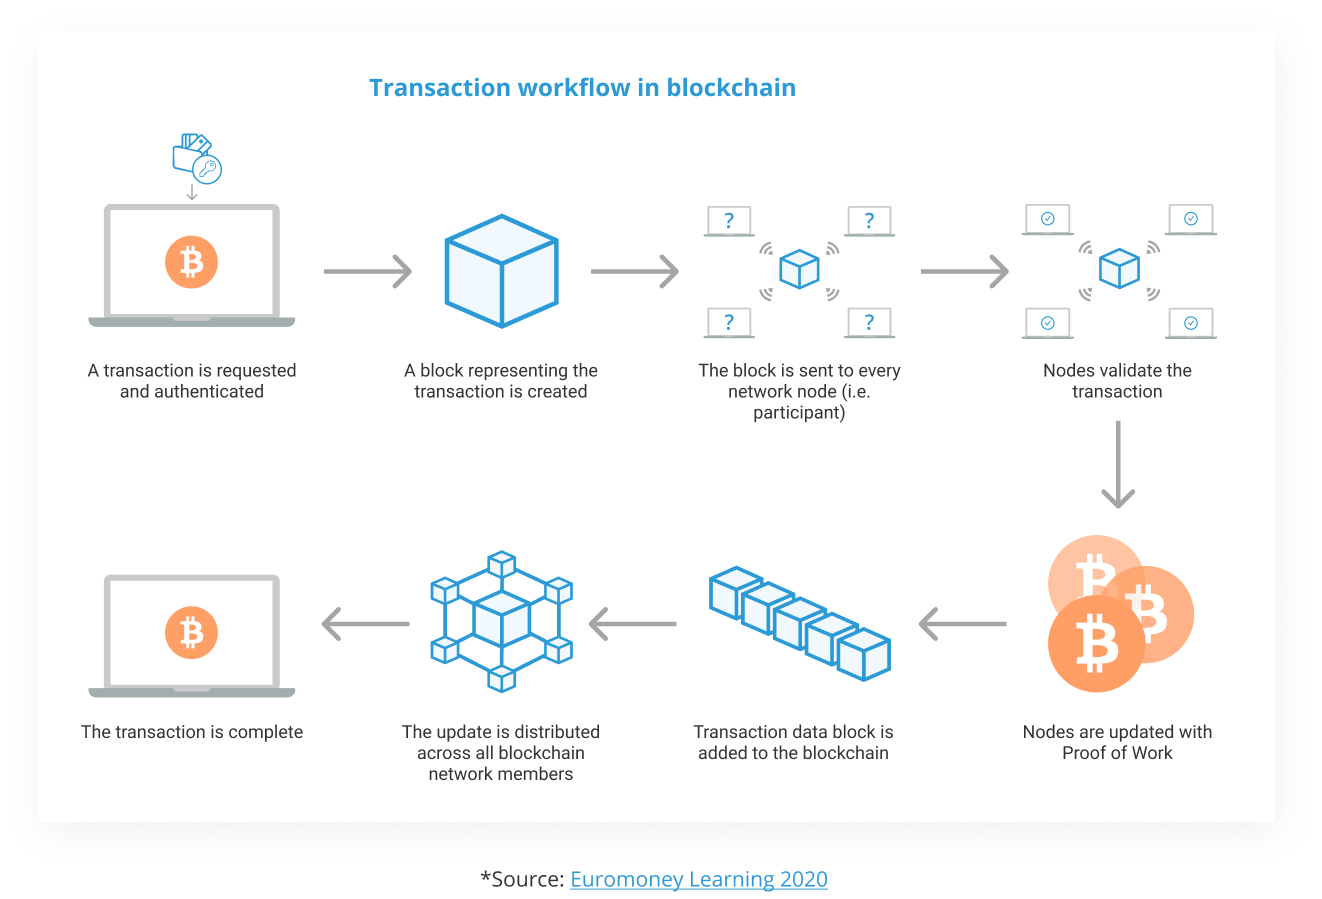 Transaction workflow in blockchain